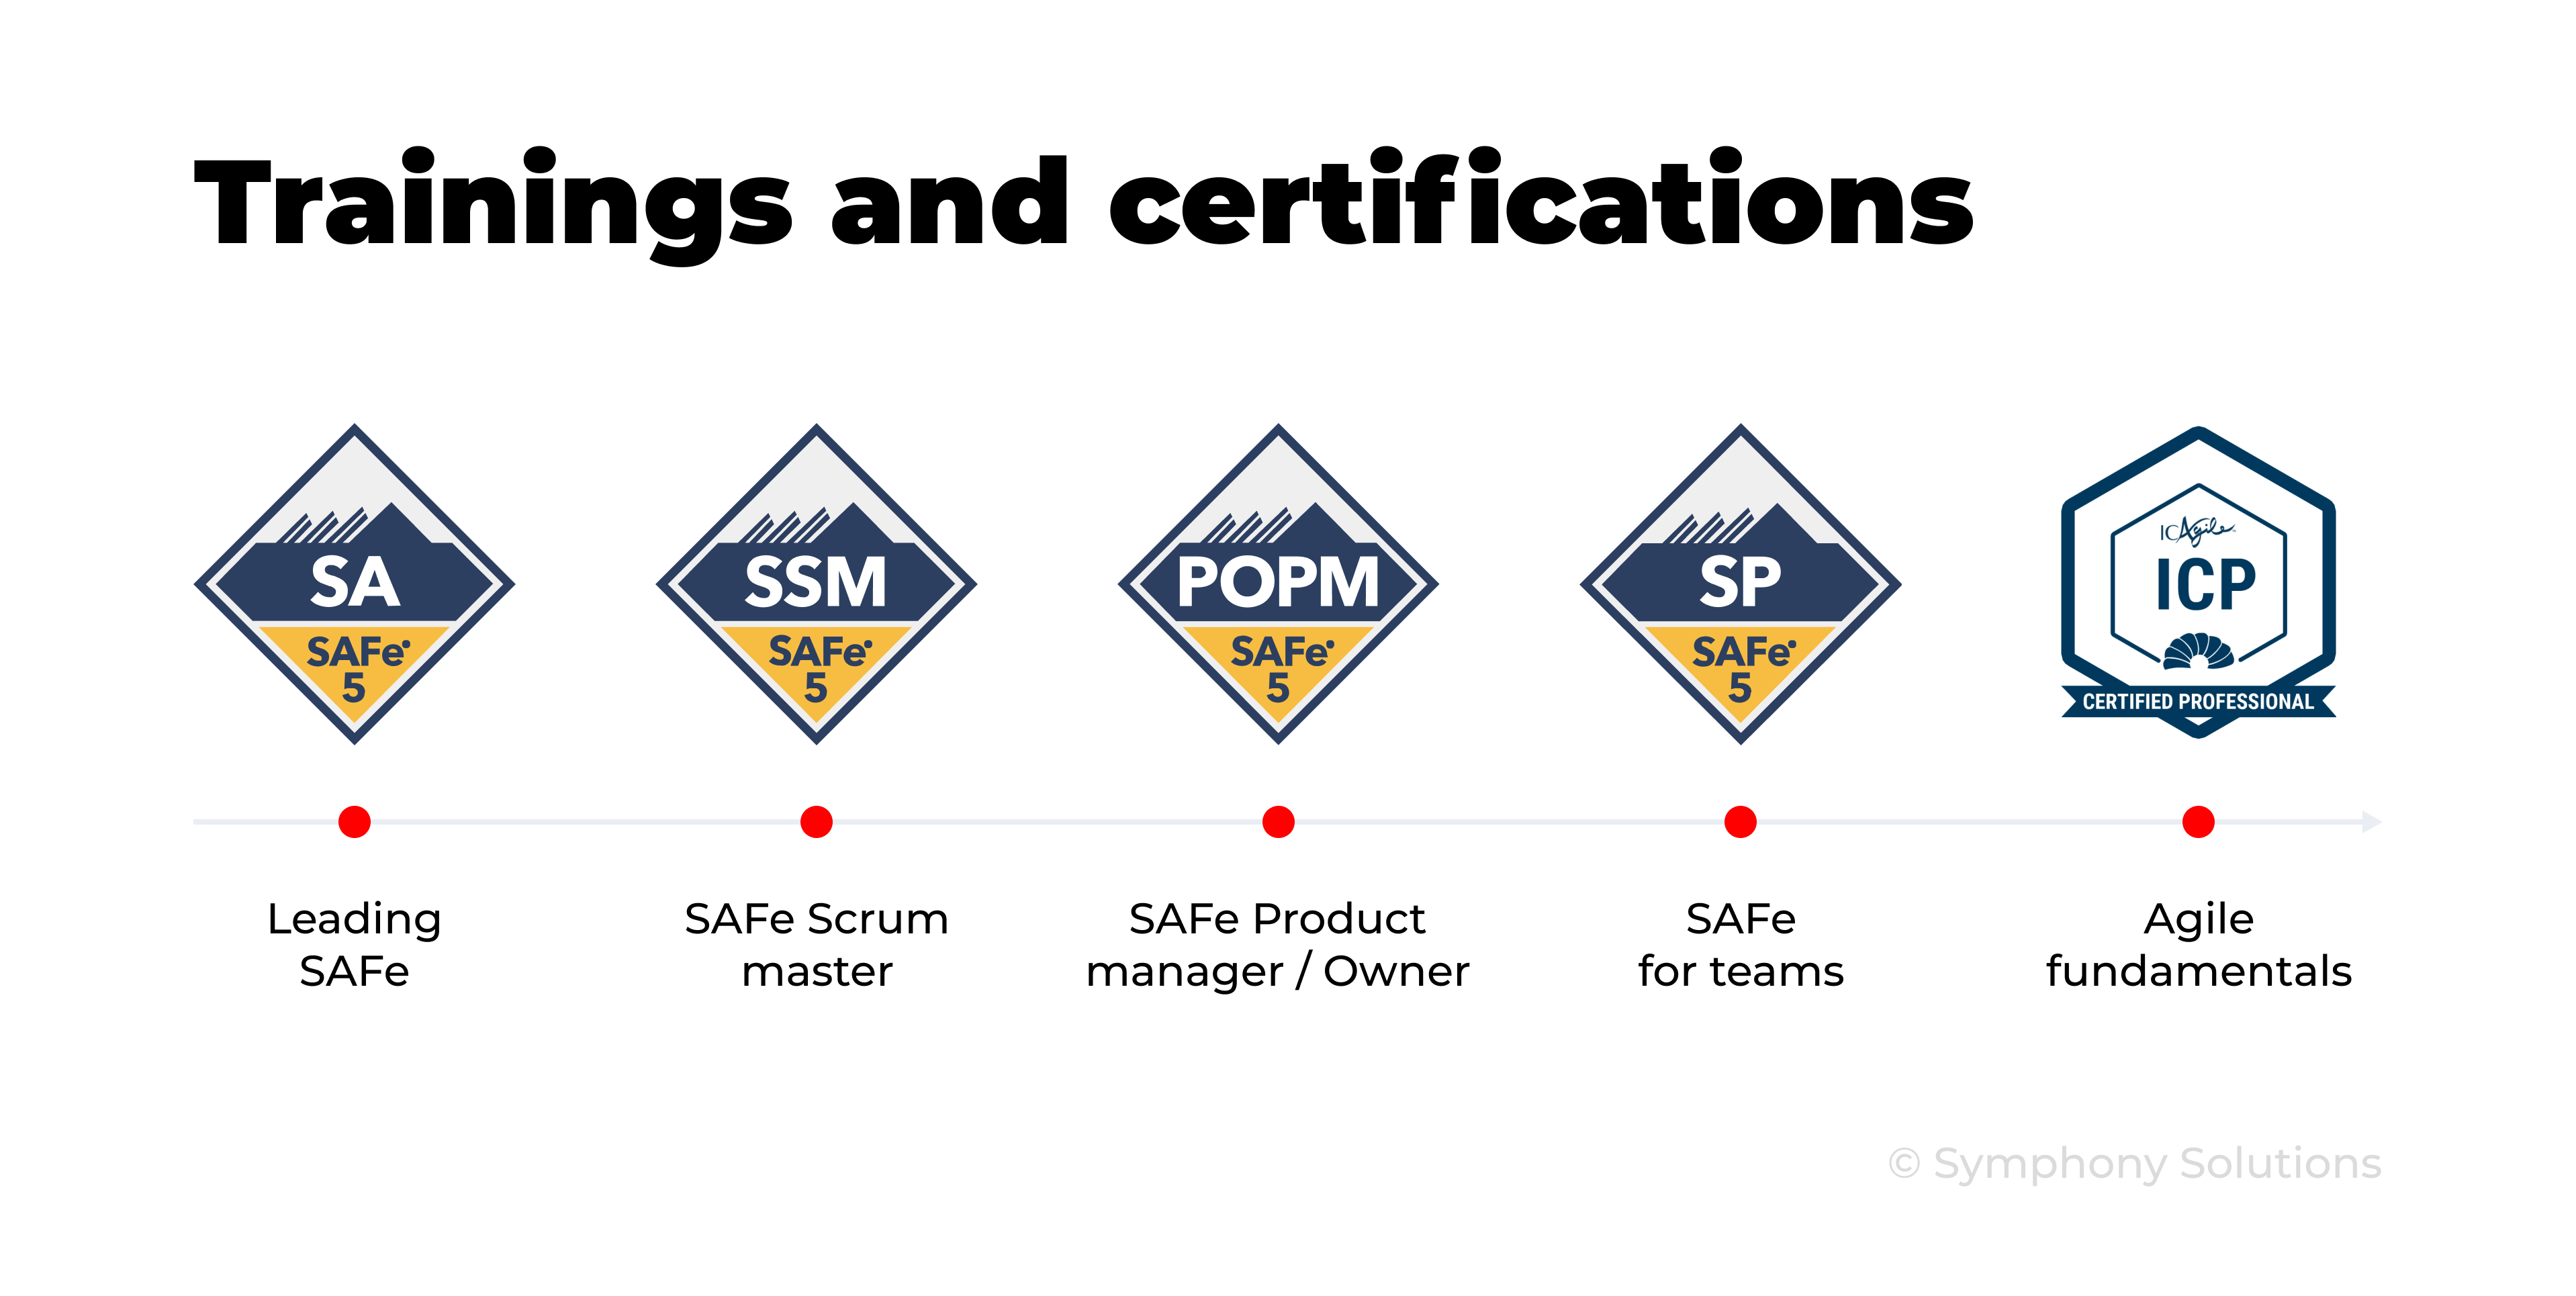 Agile certifications